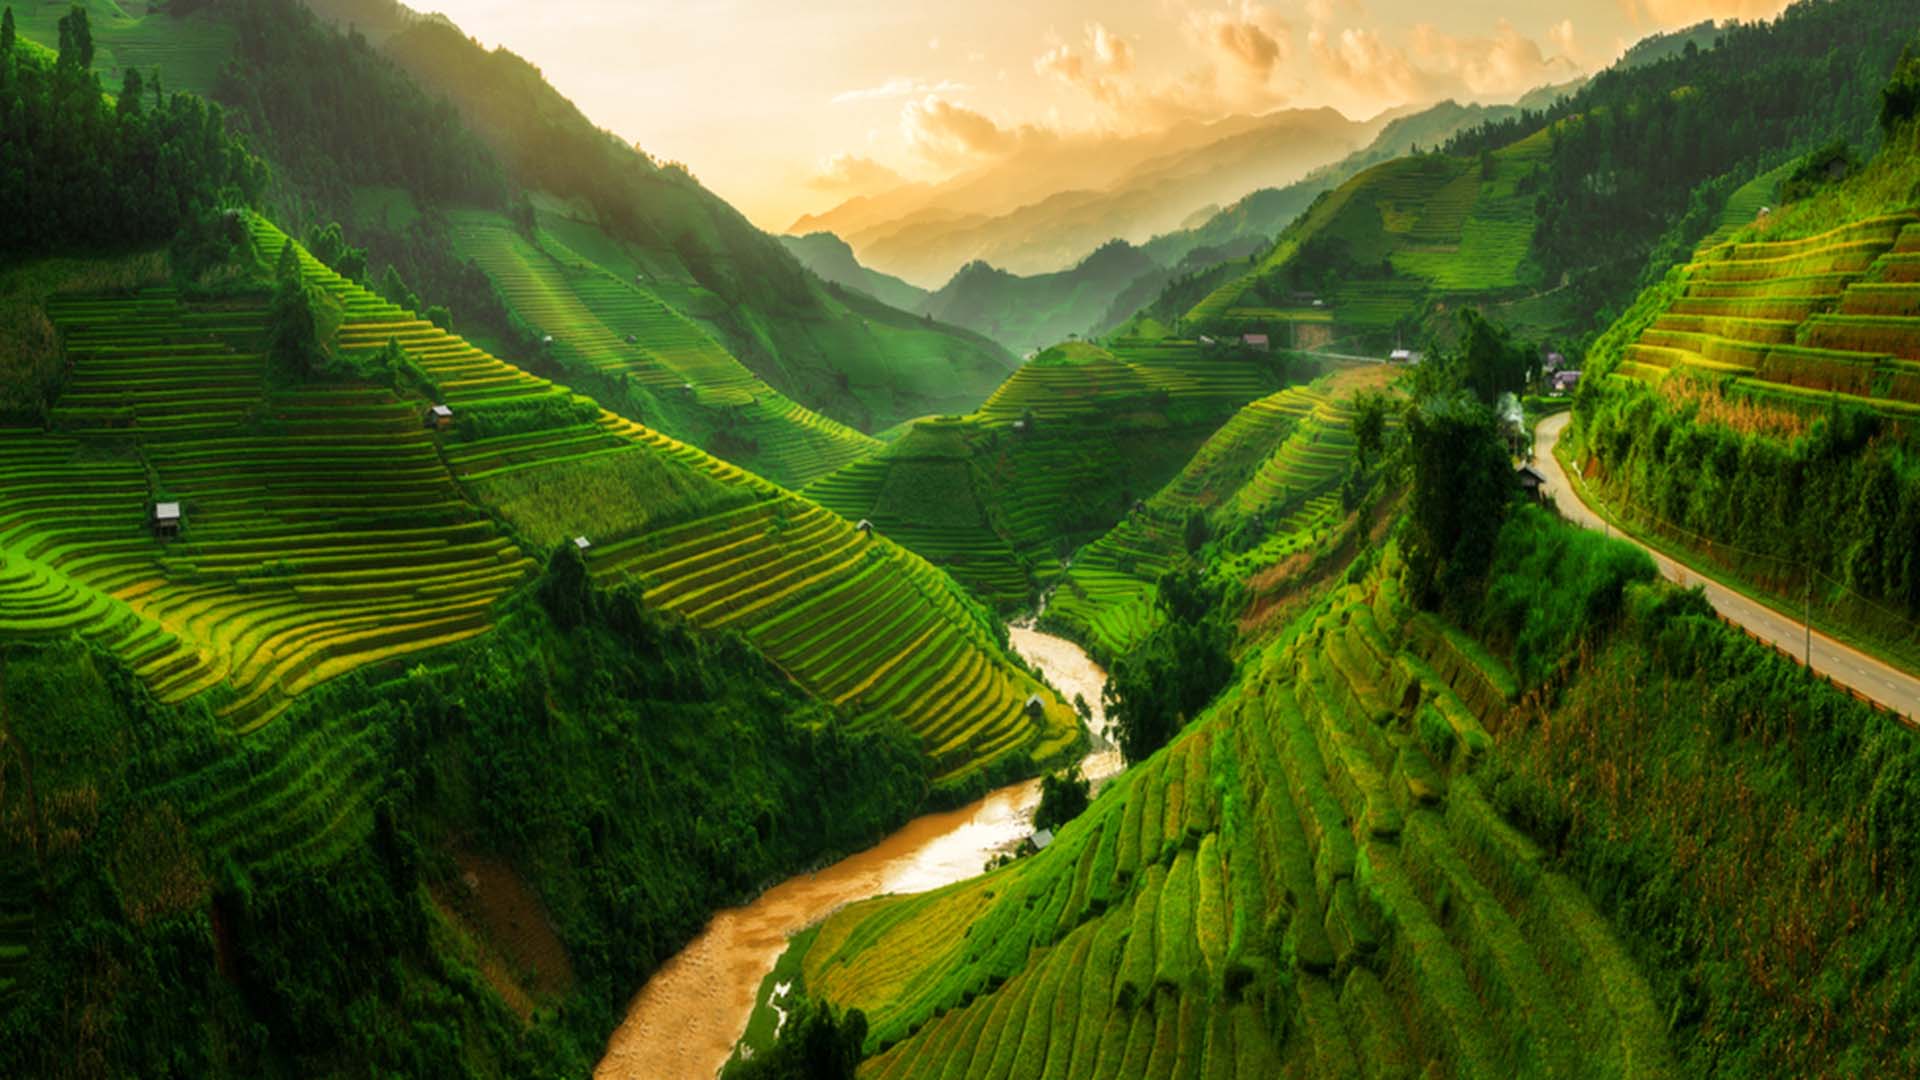 Sapa Valley Vietnam Travel Destinations Nature